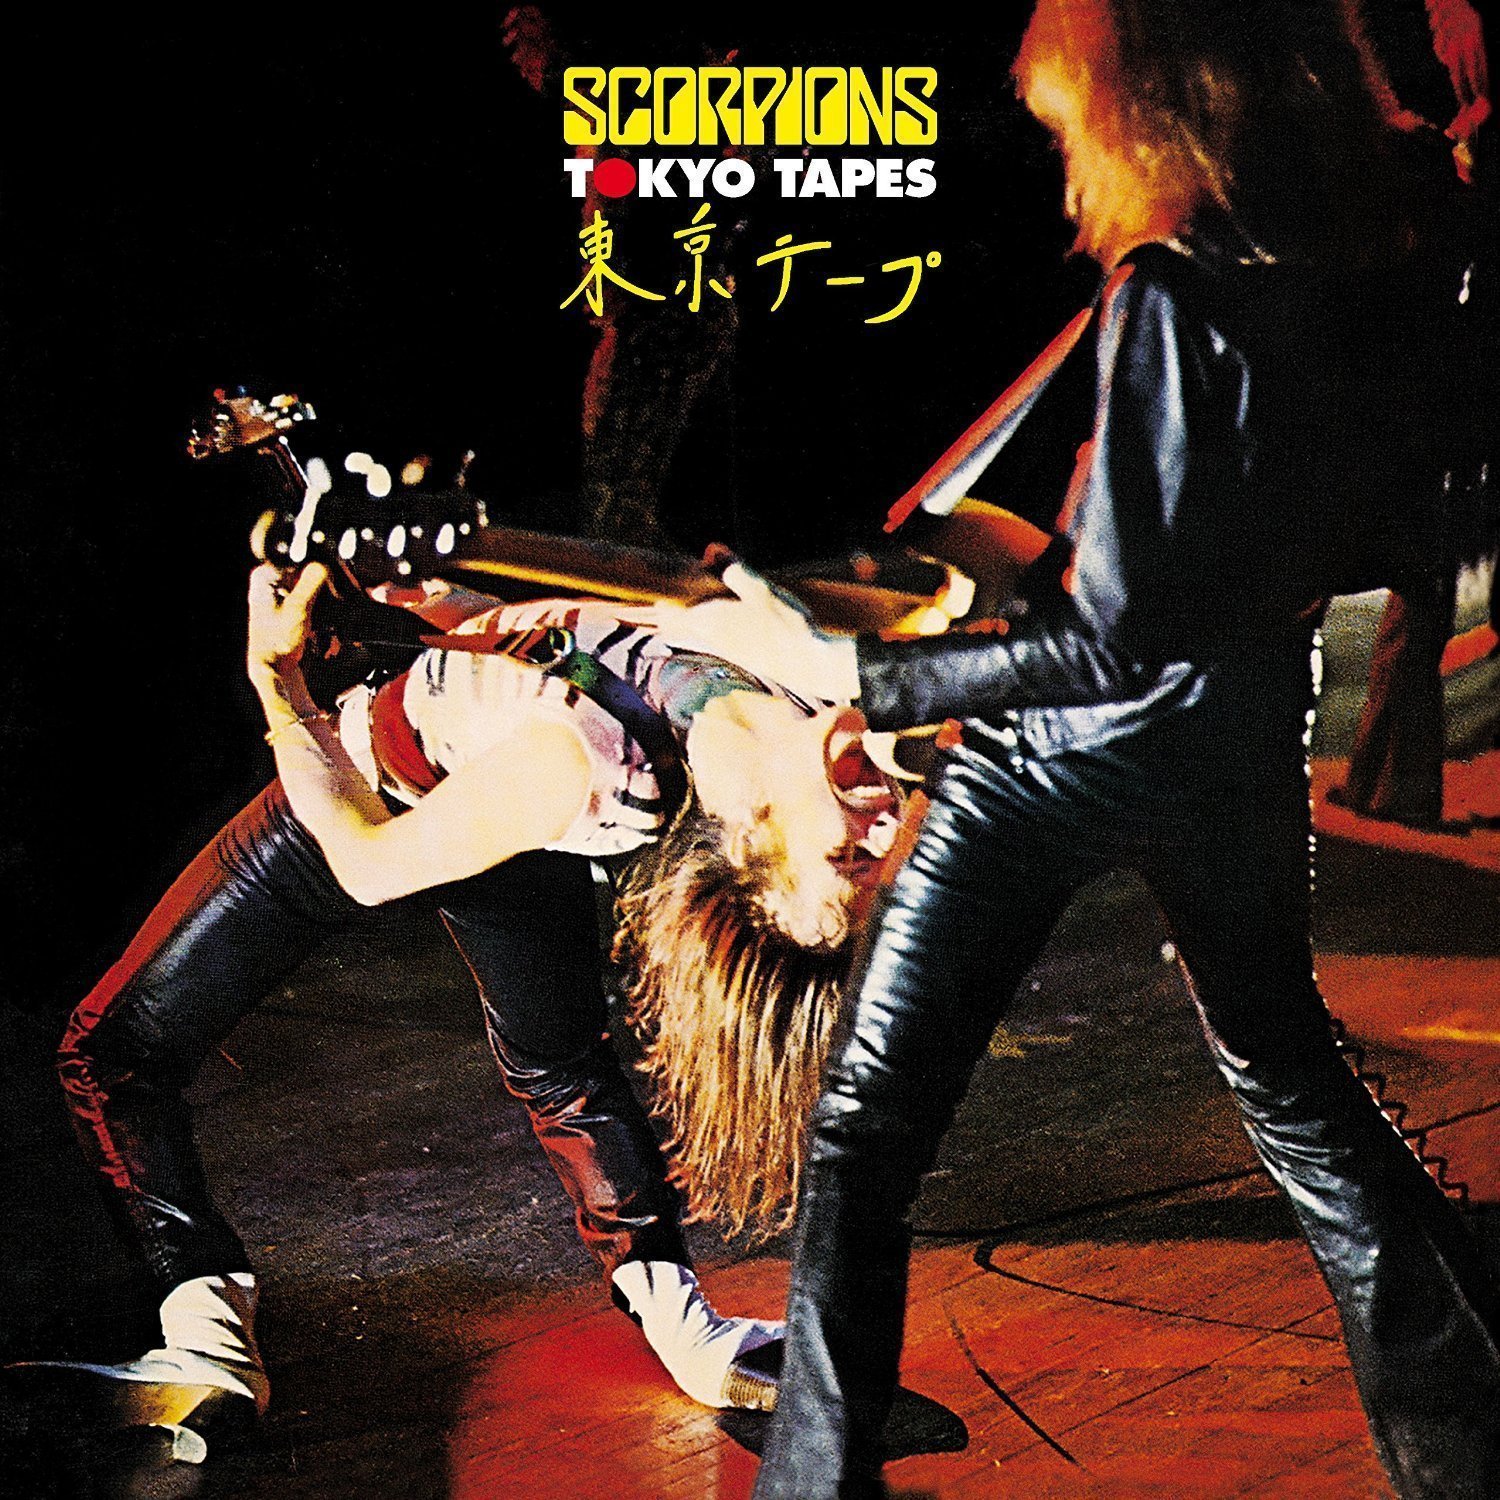 Schallplatte Scorpions - Tokyo Tapes - Live (2 CD + 2 LP)